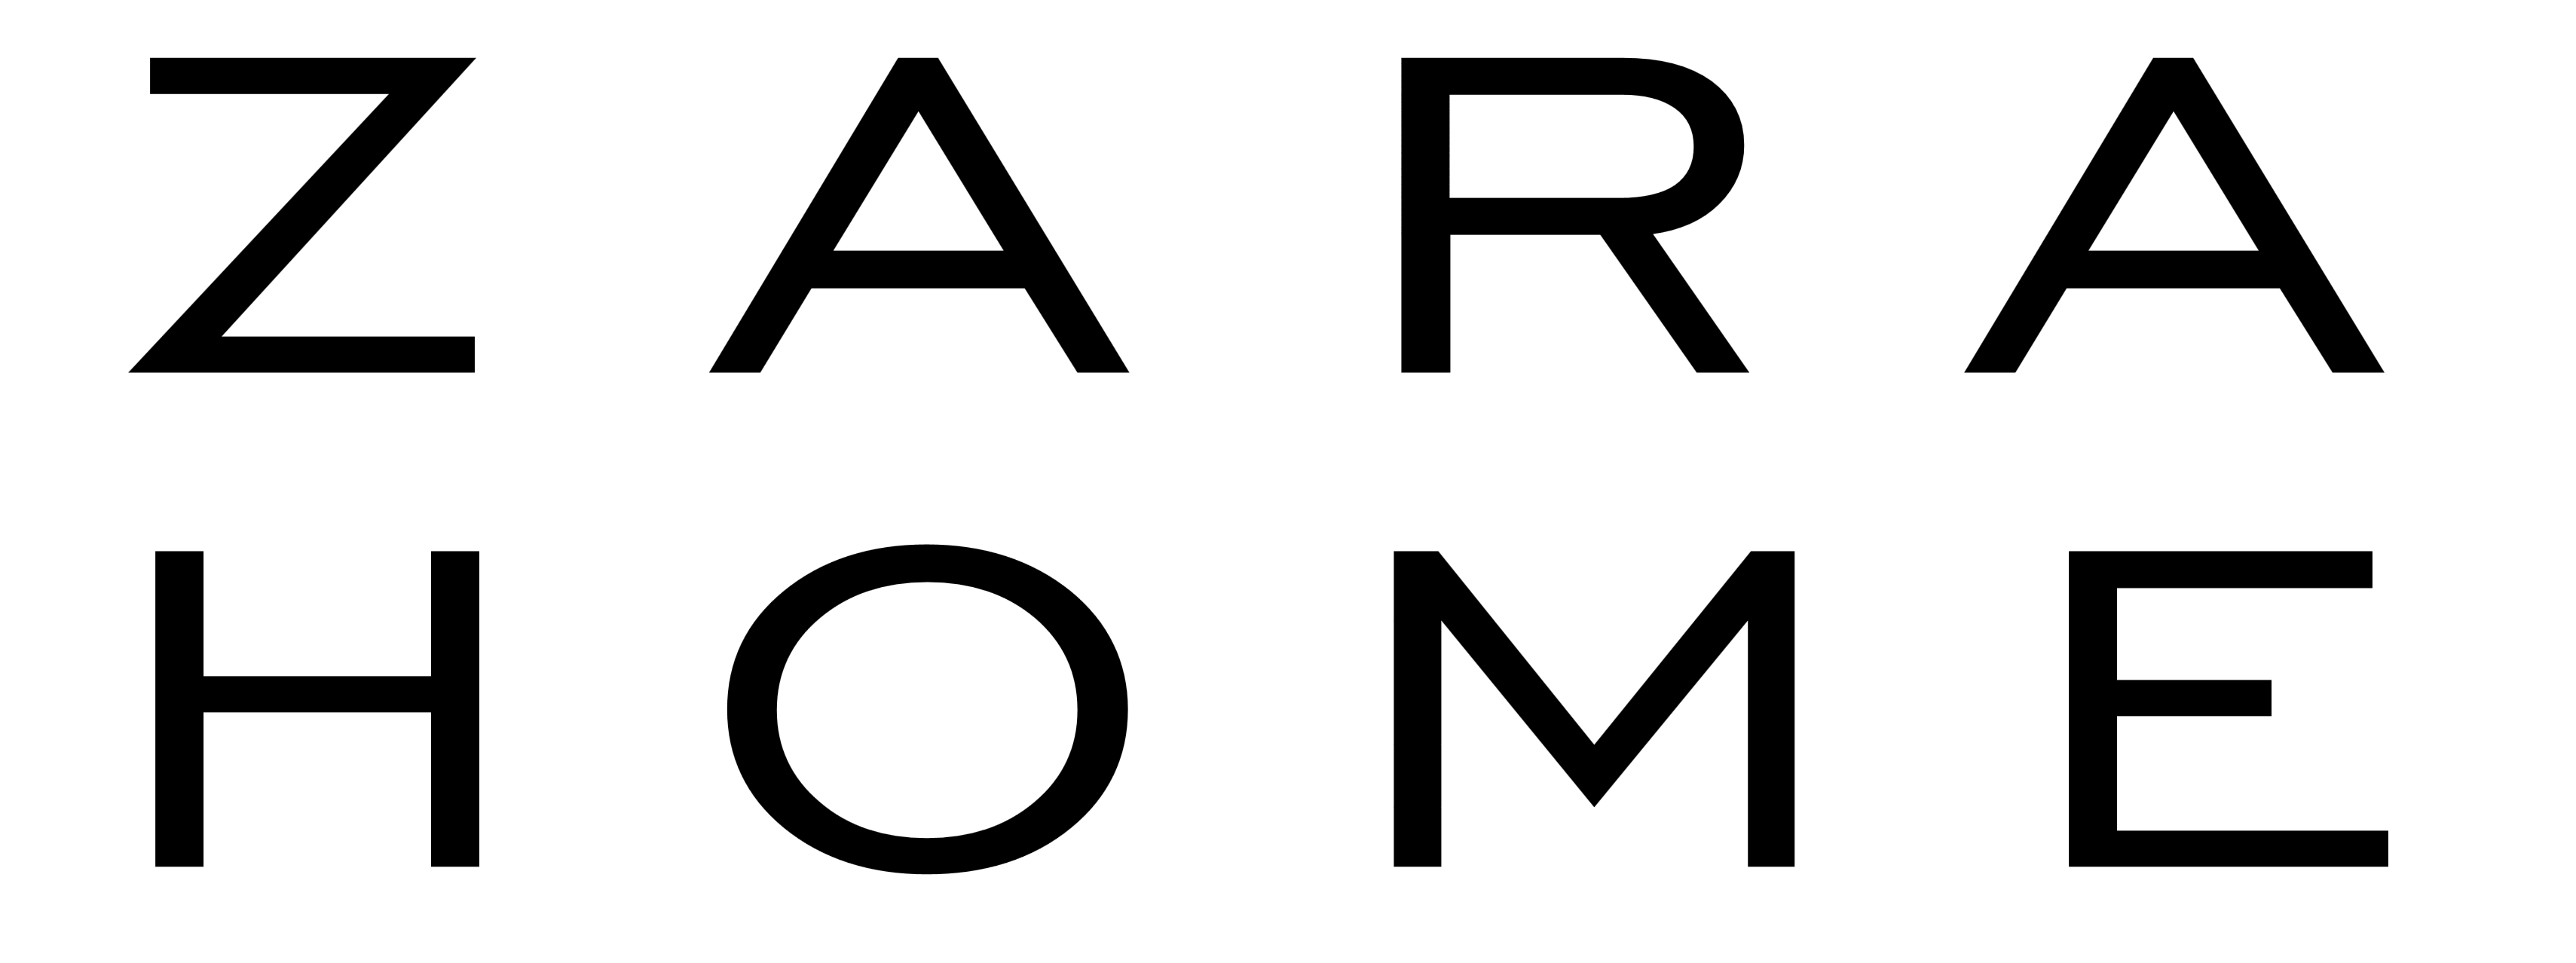 Zara logo PNG прозрачное изображение